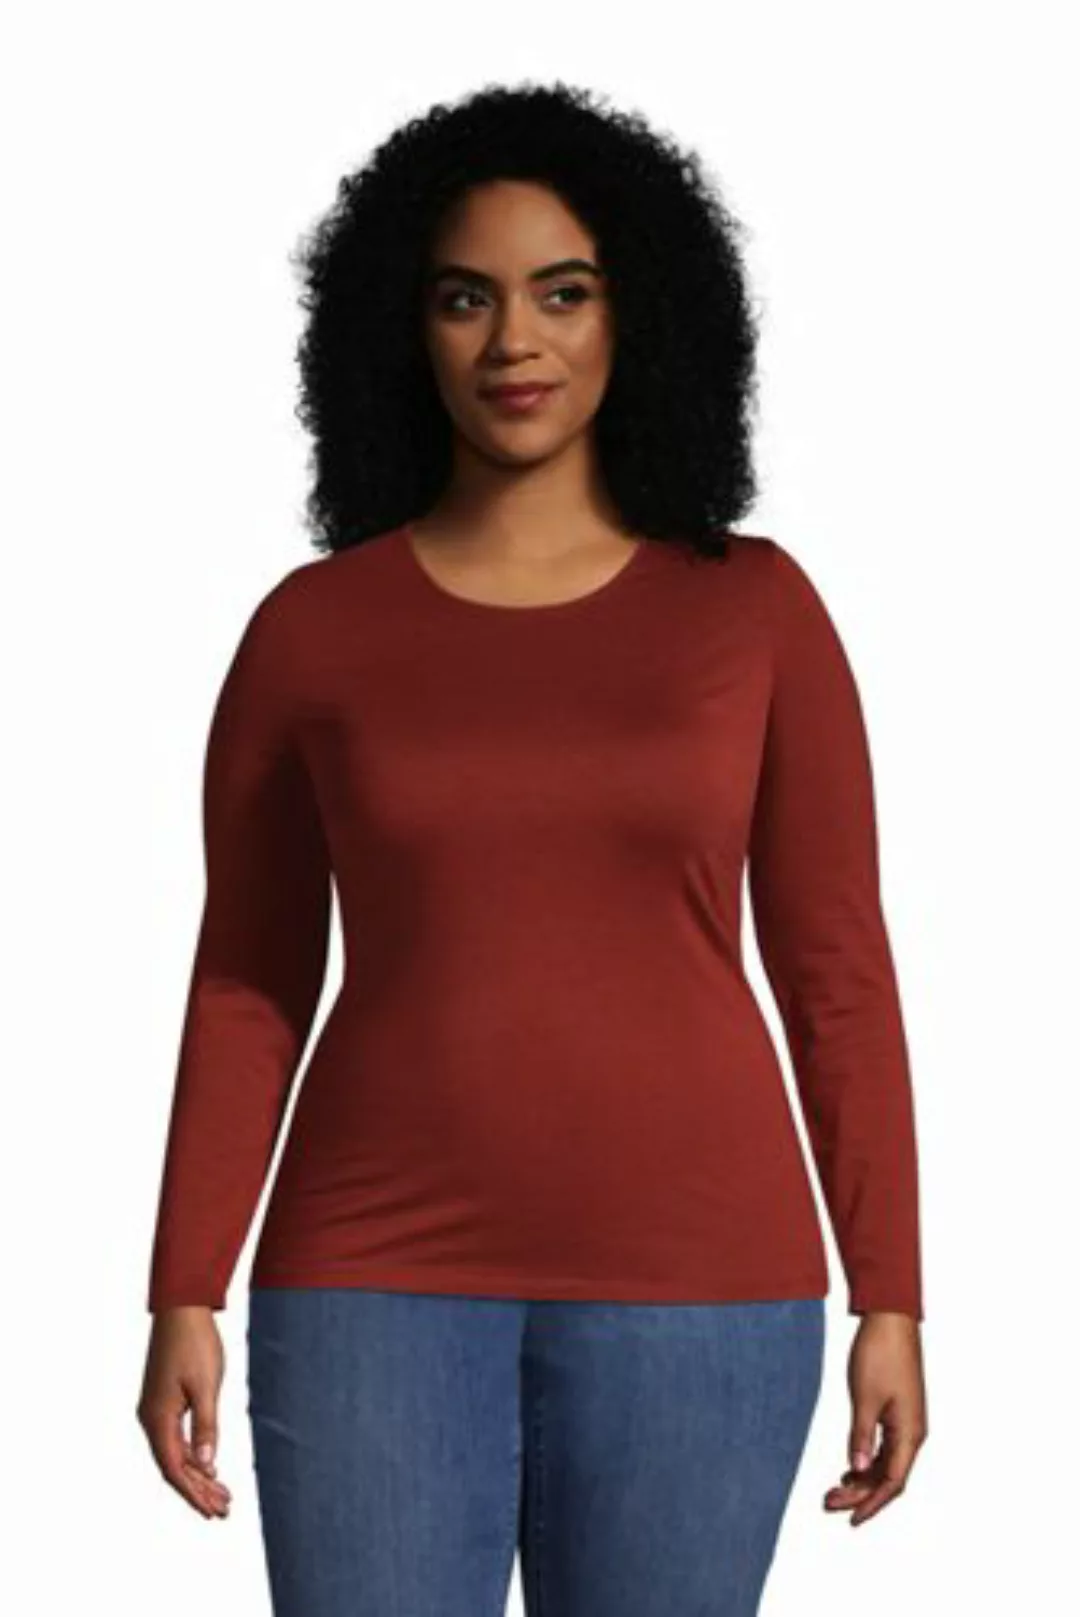 Shirt aus Baumwoll/Modalmix in großen Größen, Damen, Größe: 56-58 Plusgröße günstig online kaufen